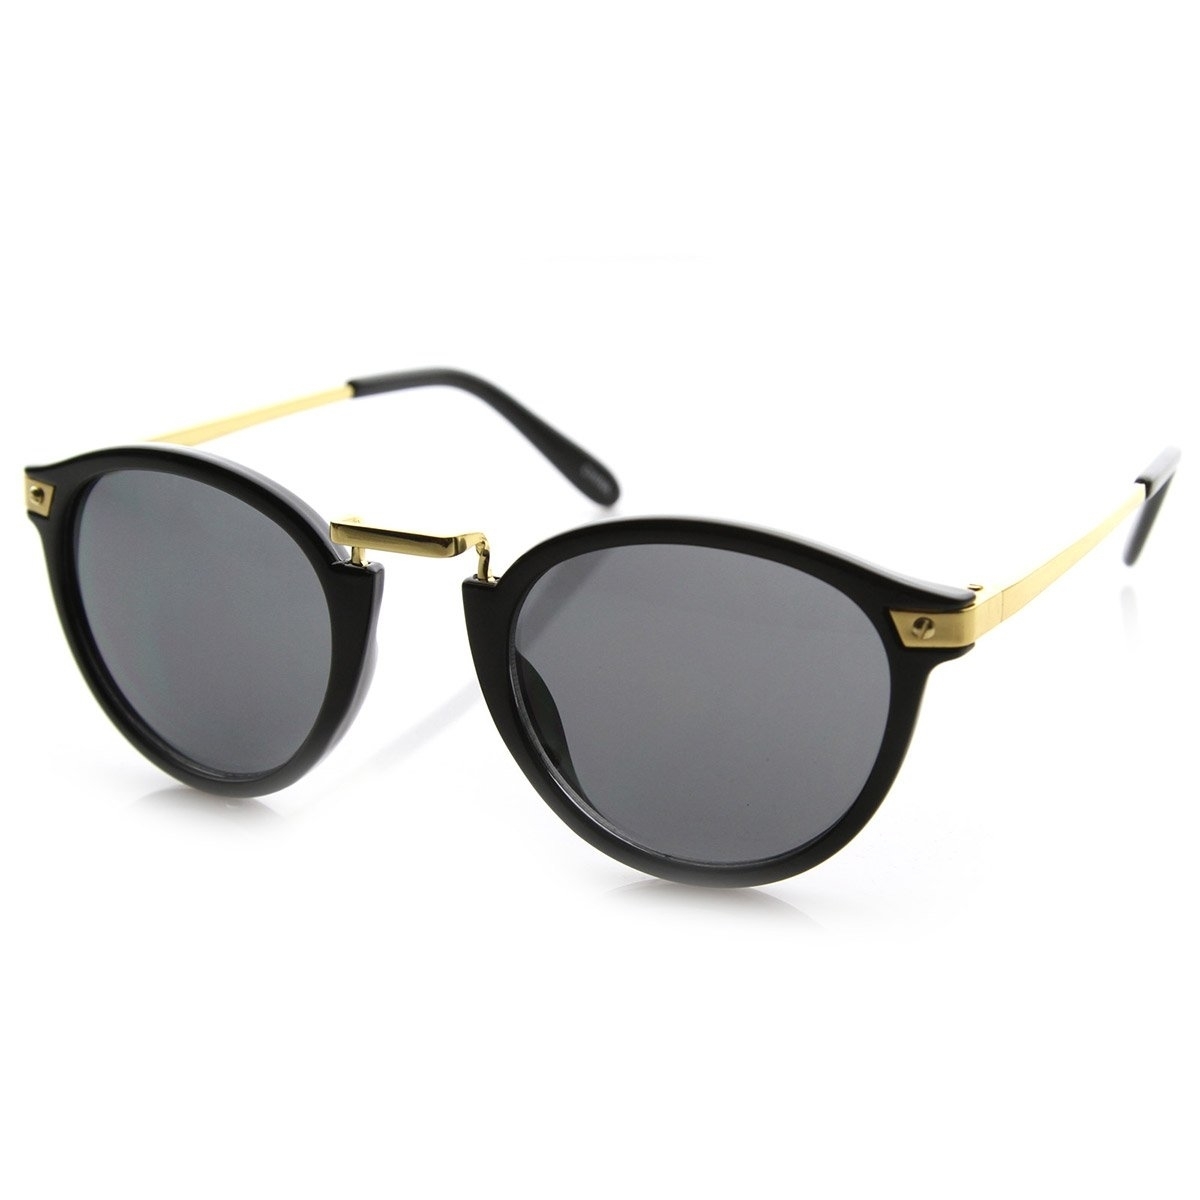 Vintage Inspired Round Horned Rim P-3 Frame Retro Sunglasses - Havana Amber